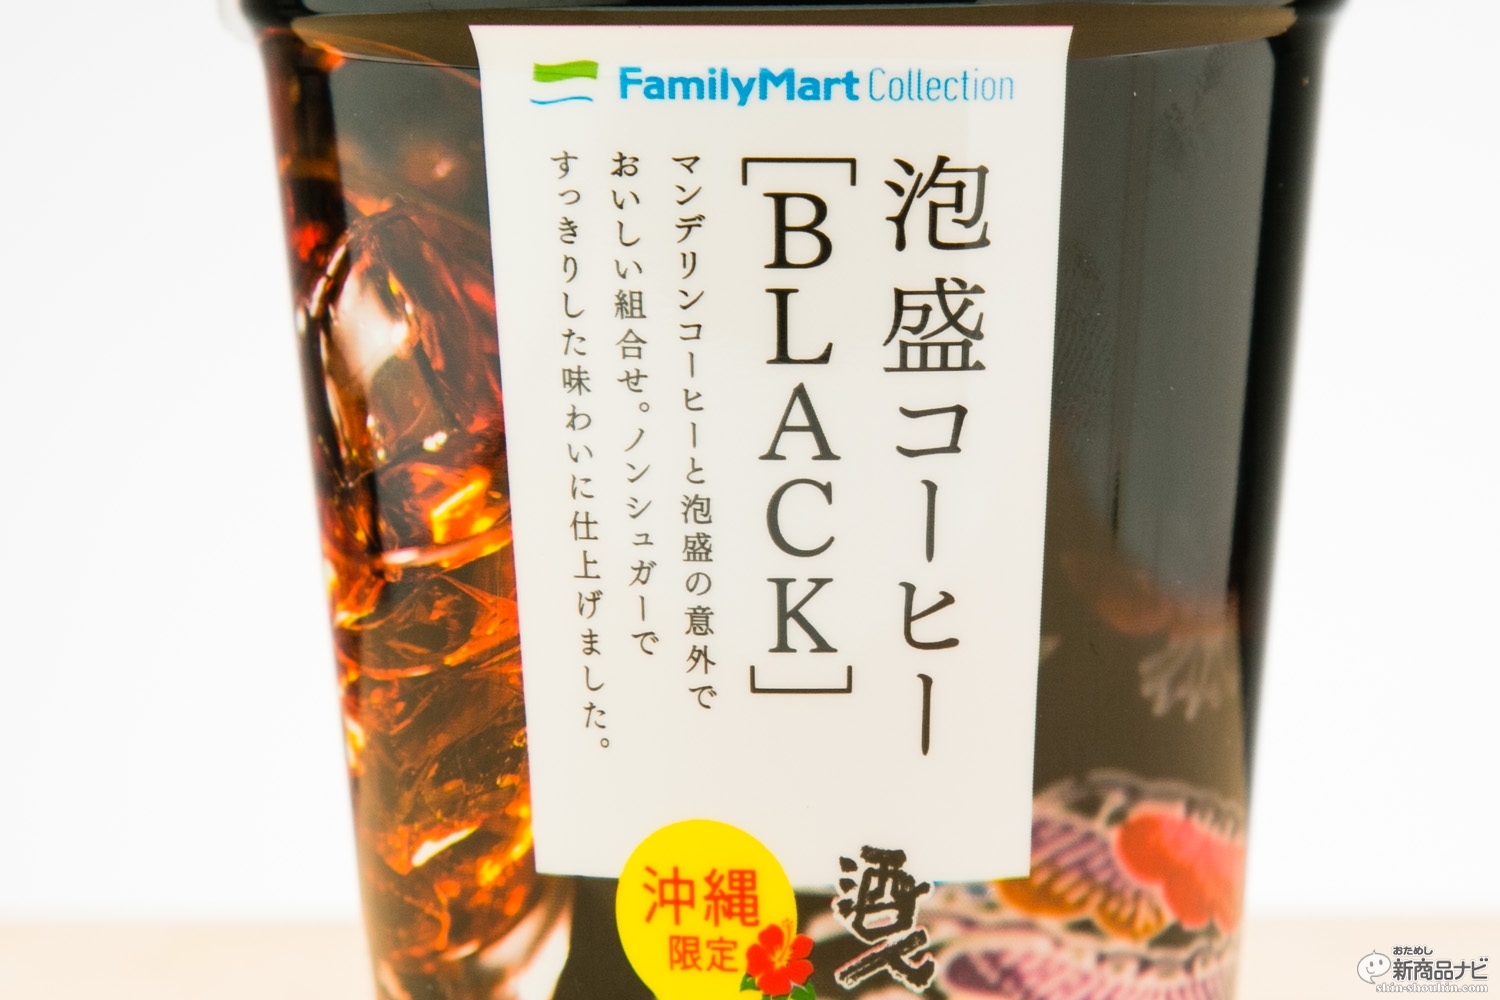 沖縄ファミリーマート限定で売られているという 泡盛コーヒー Black を取り寄せて試してみた おためし新商品ナビ